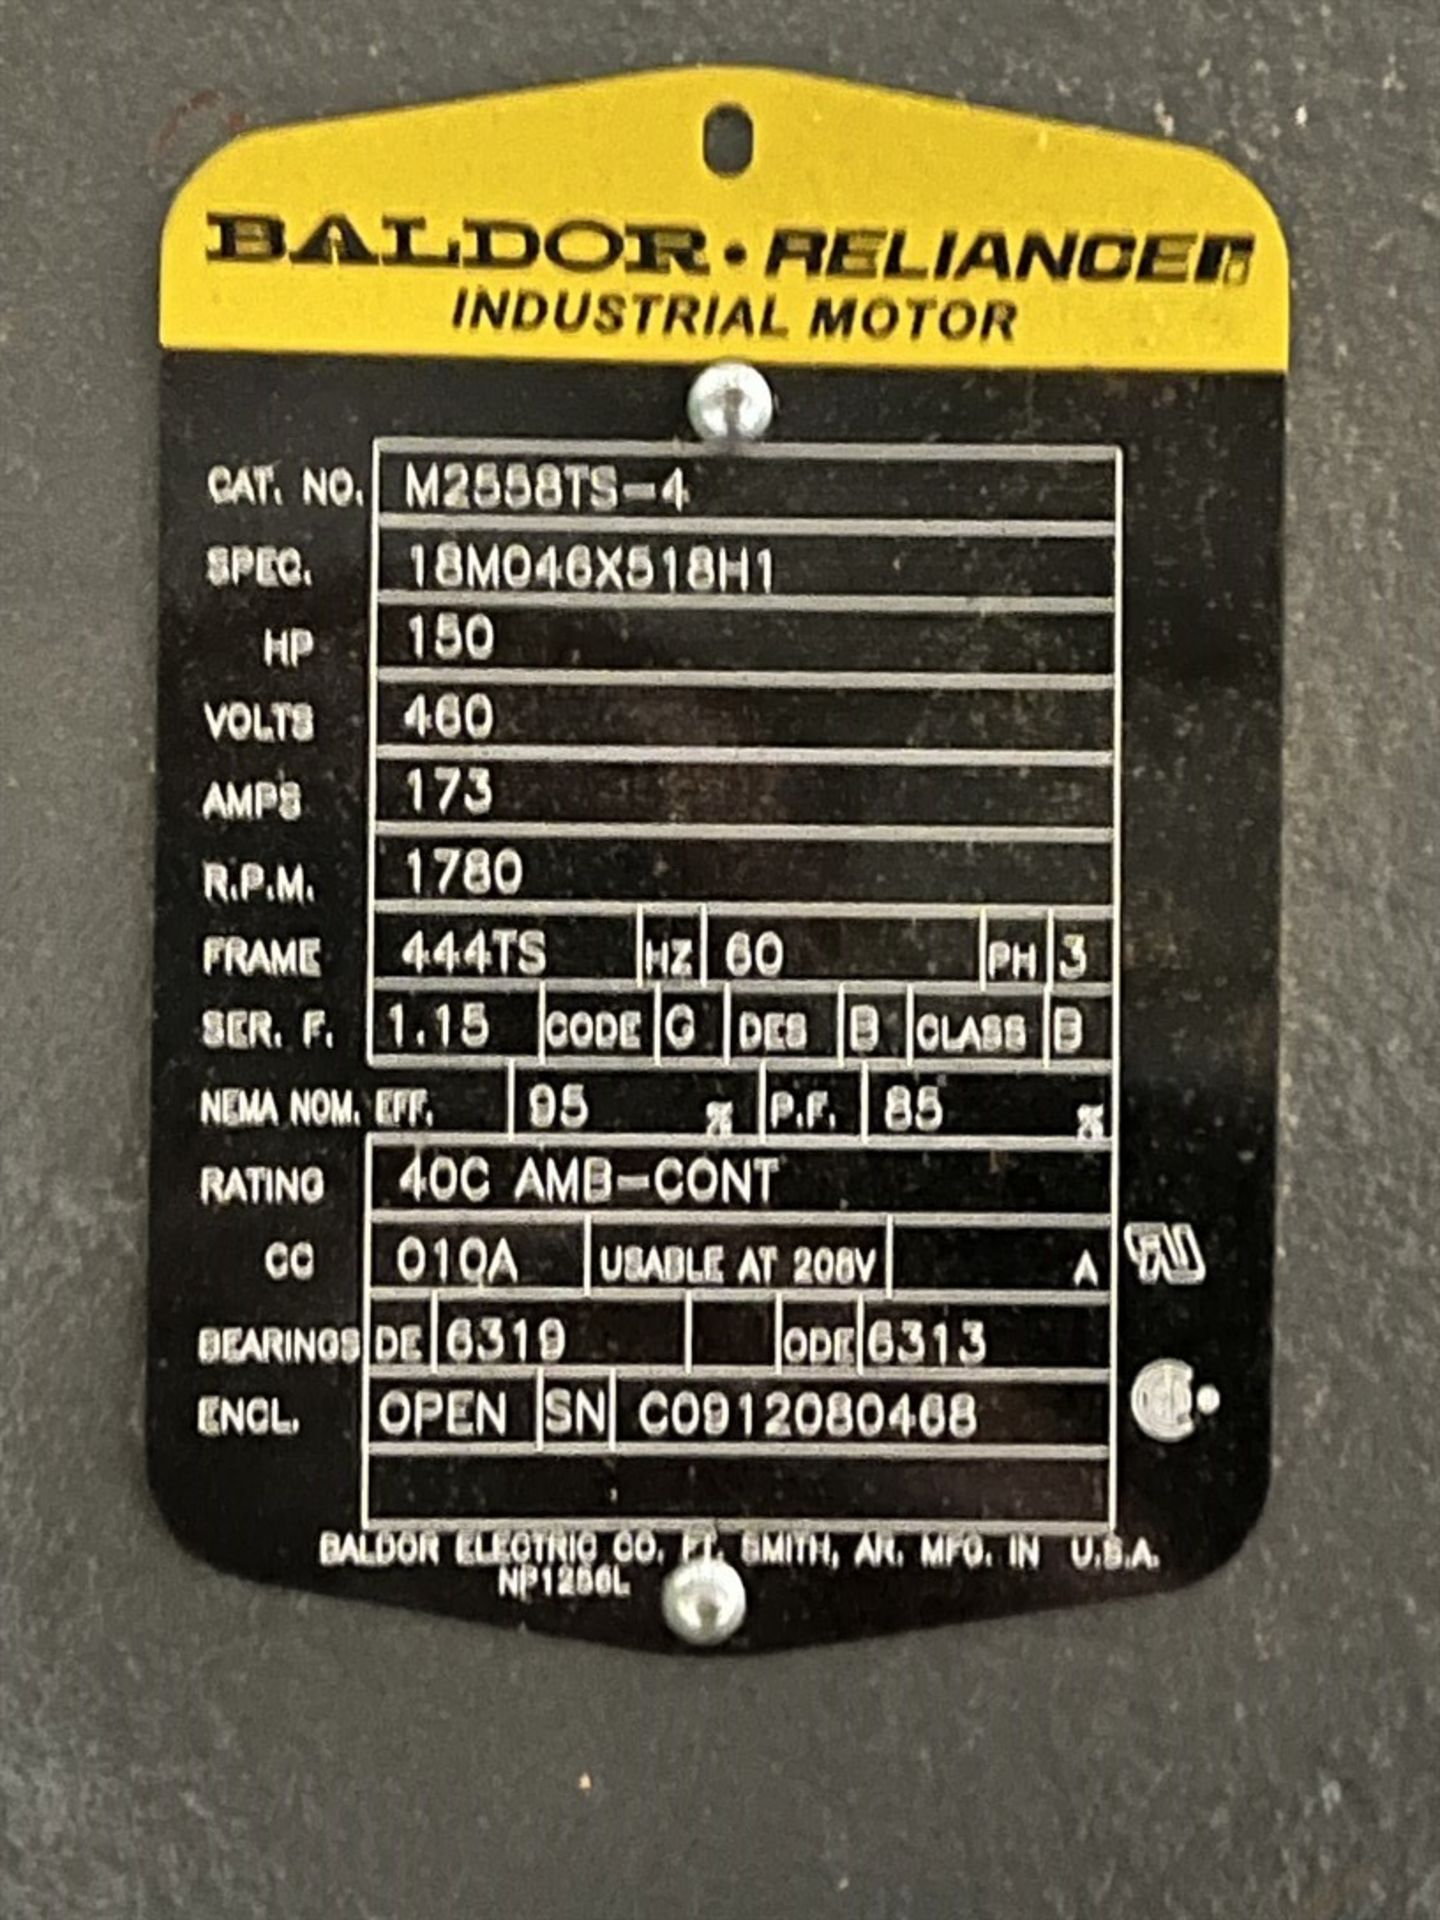 BALDOR 150 HP Motor (Building 5) - Image 3 of 3